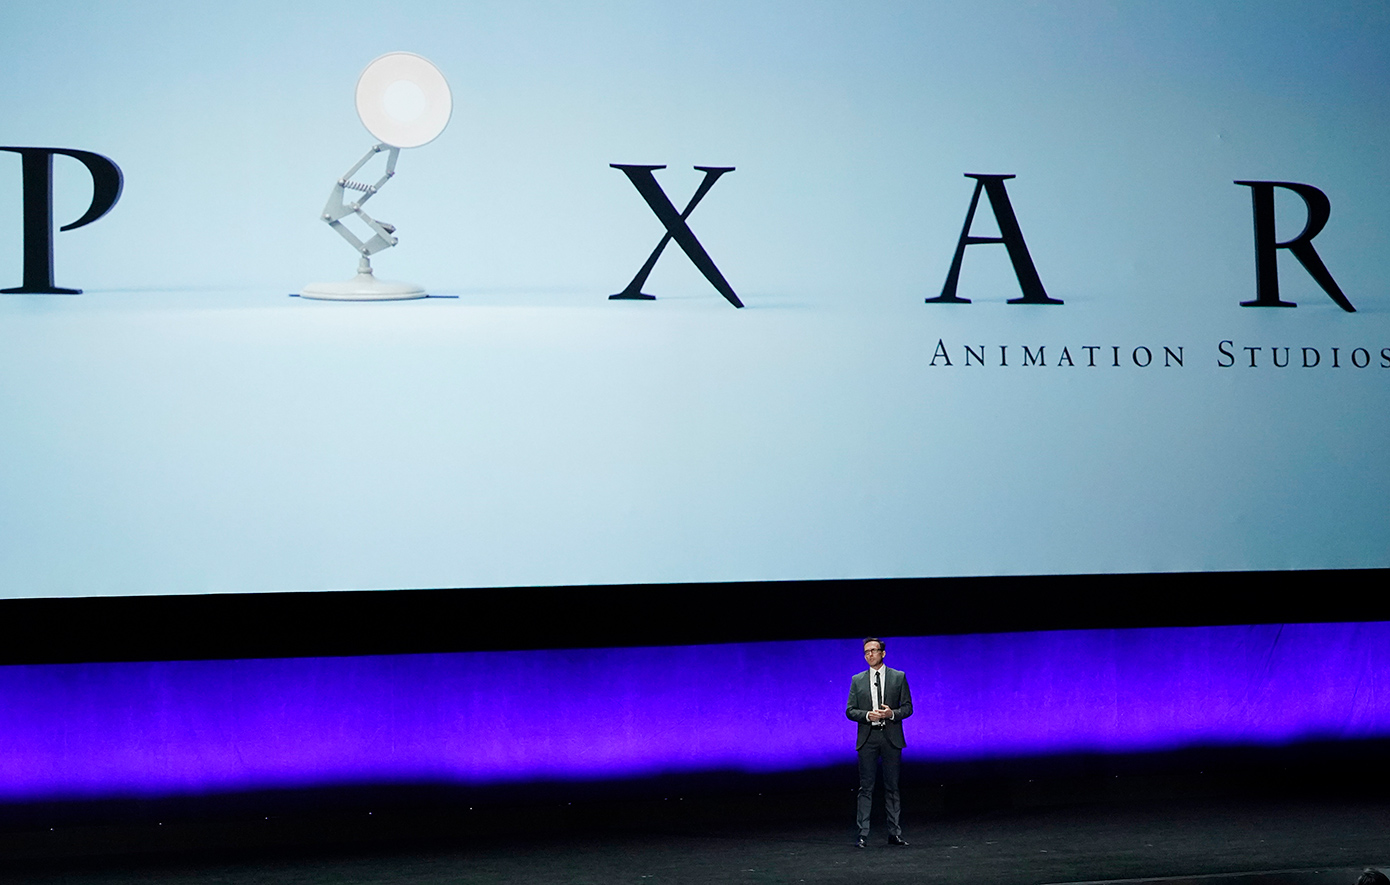 Αυτή είναι η ταινία με τη μεγαλύτερη εισπρακτική επιτυχία στην ιστορία της «Pixar»